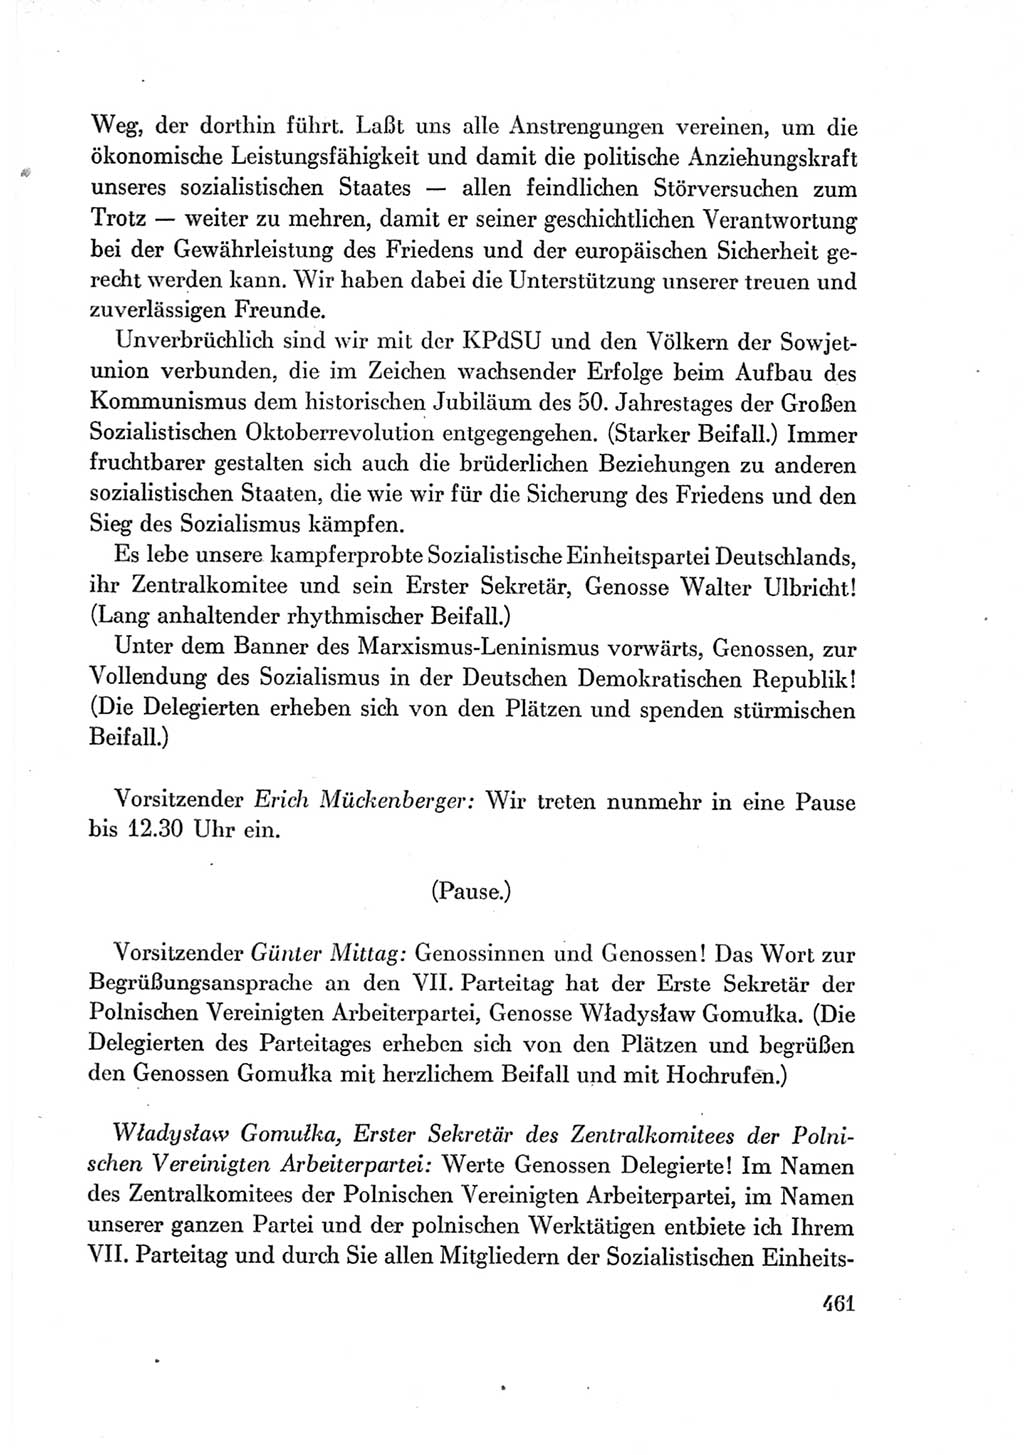 Protokoll der Verhandlungen des Ⅶ. Parteitages der Sozialistischen Einheitspartei Deutschlands (SED) [Deutsche Demokratische Republik (DDR)] 1967, Band Ⅰ, Seite 461 (Prot. Verh. Ⅶ. PT SED DDR 1967, Bd. Ⅰ, S. 461)